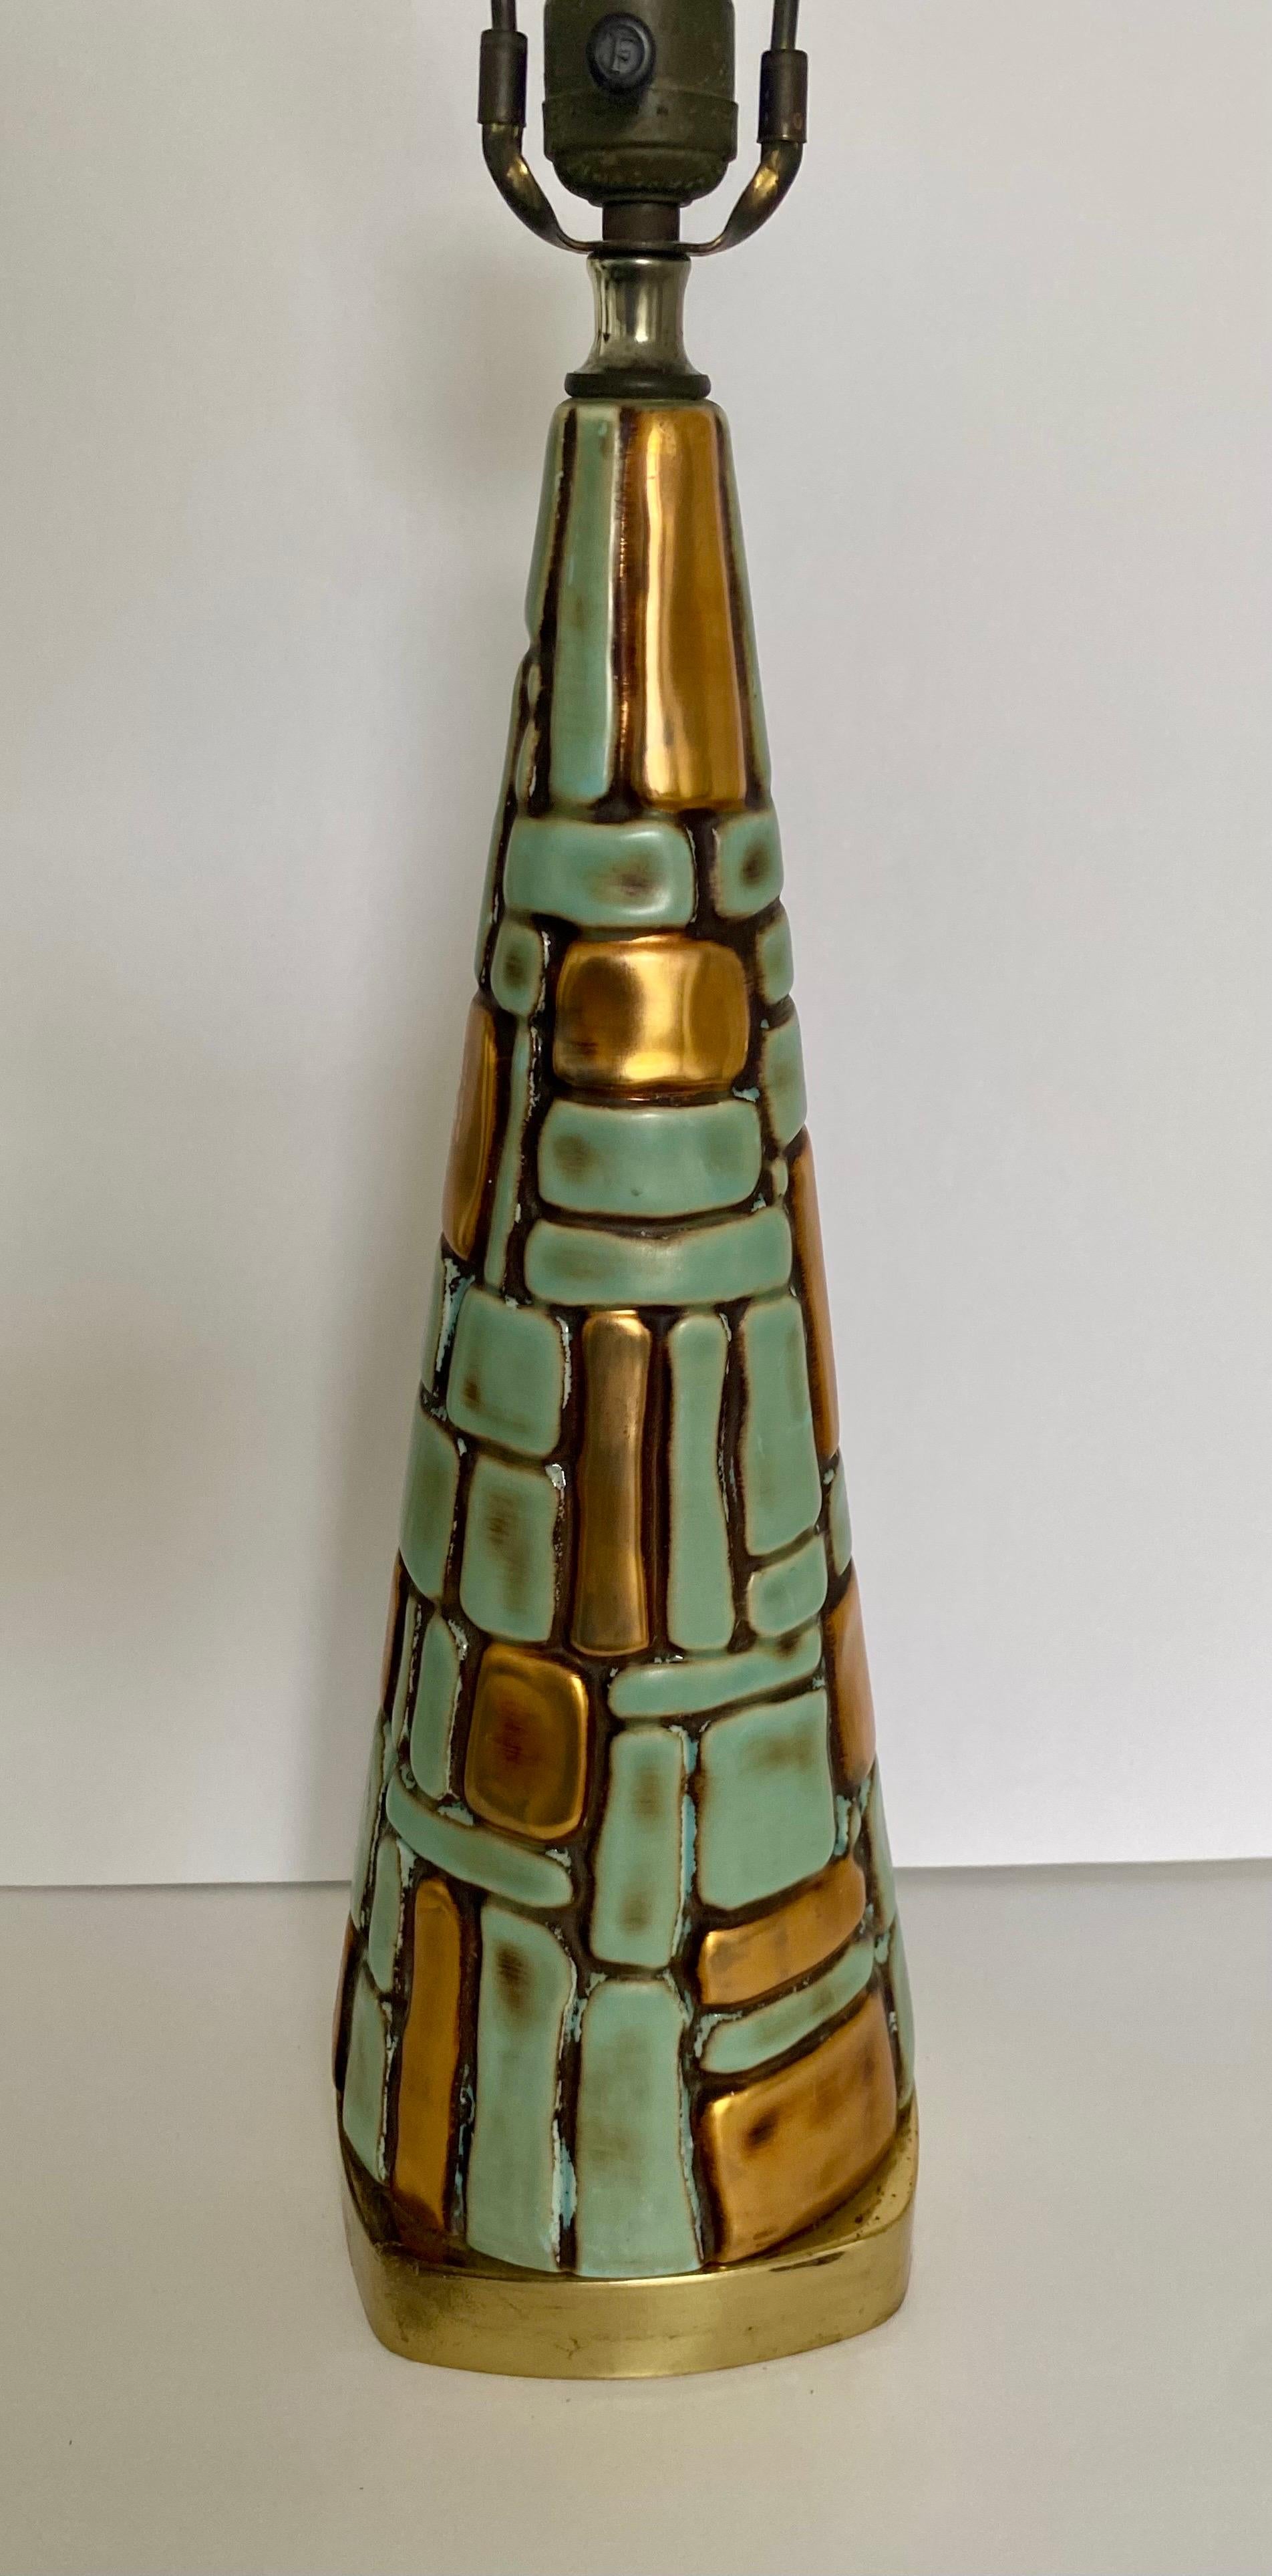 Fabuleuse lampe de table de style brutaliste du milieu du siècle dernier.  Cette lampe sculpturale de forme pyramidale présente un motif de mosaïque en relief texturé, semblable à de la pierre, dans des tons turquoise vibrants et des tons chauds